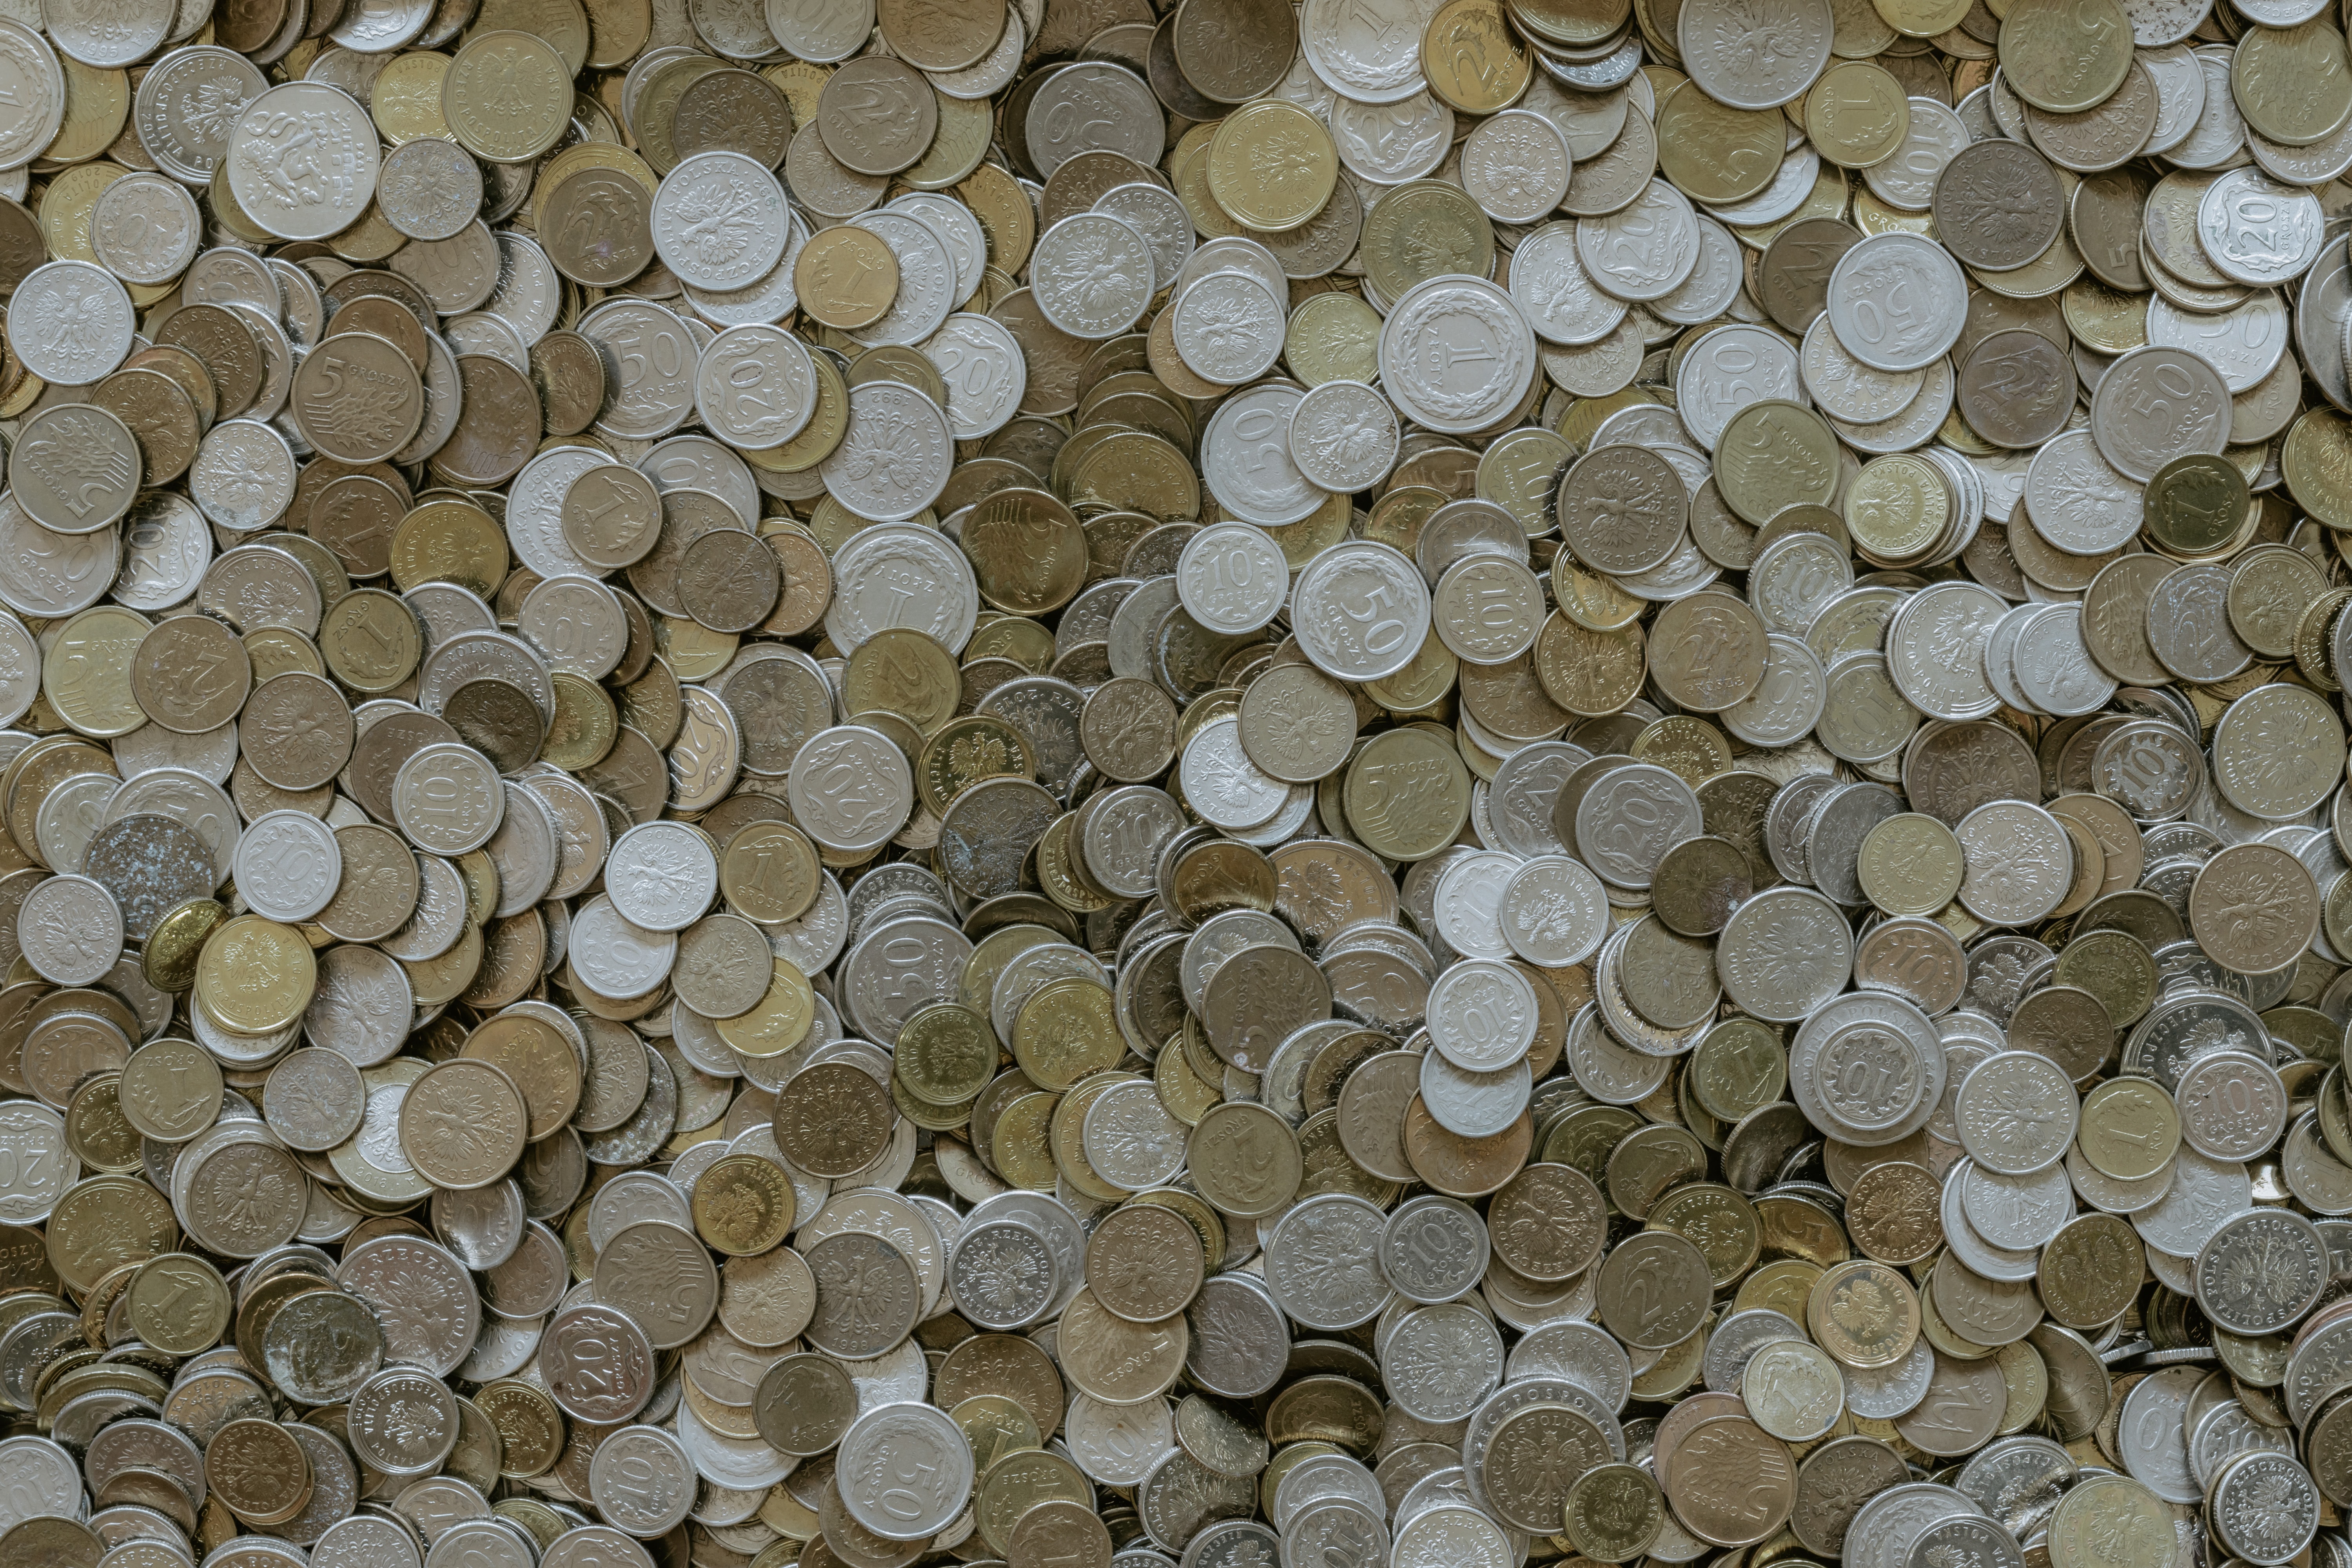 Koin menjadi salah satu benda yang dibuat dari nikel | Sumber: Unsplash (Pawel Czerwinski)